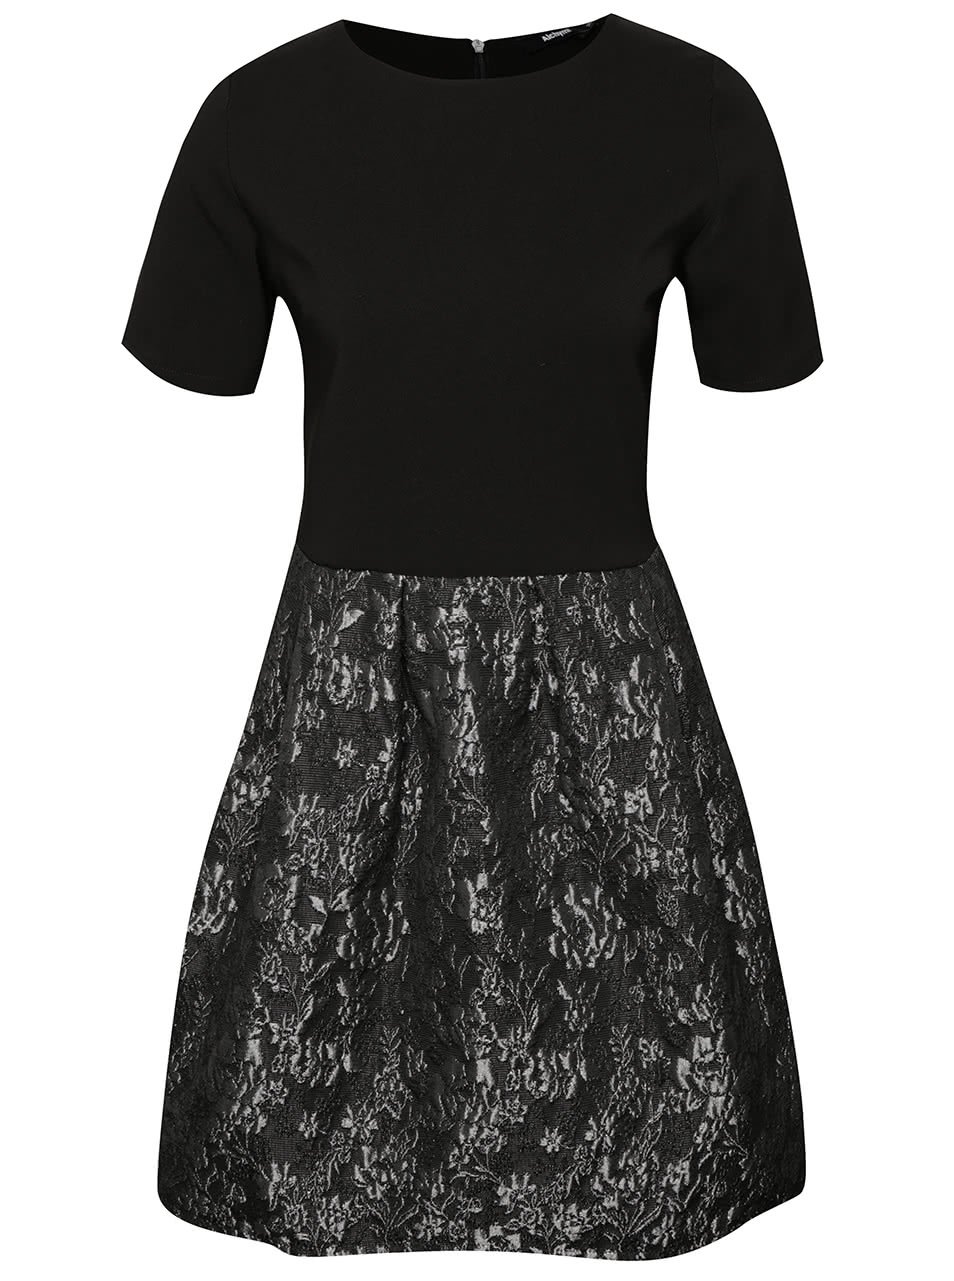 Šedo-černé šaty s lesklou výšivkou květin Alchymi Tyna